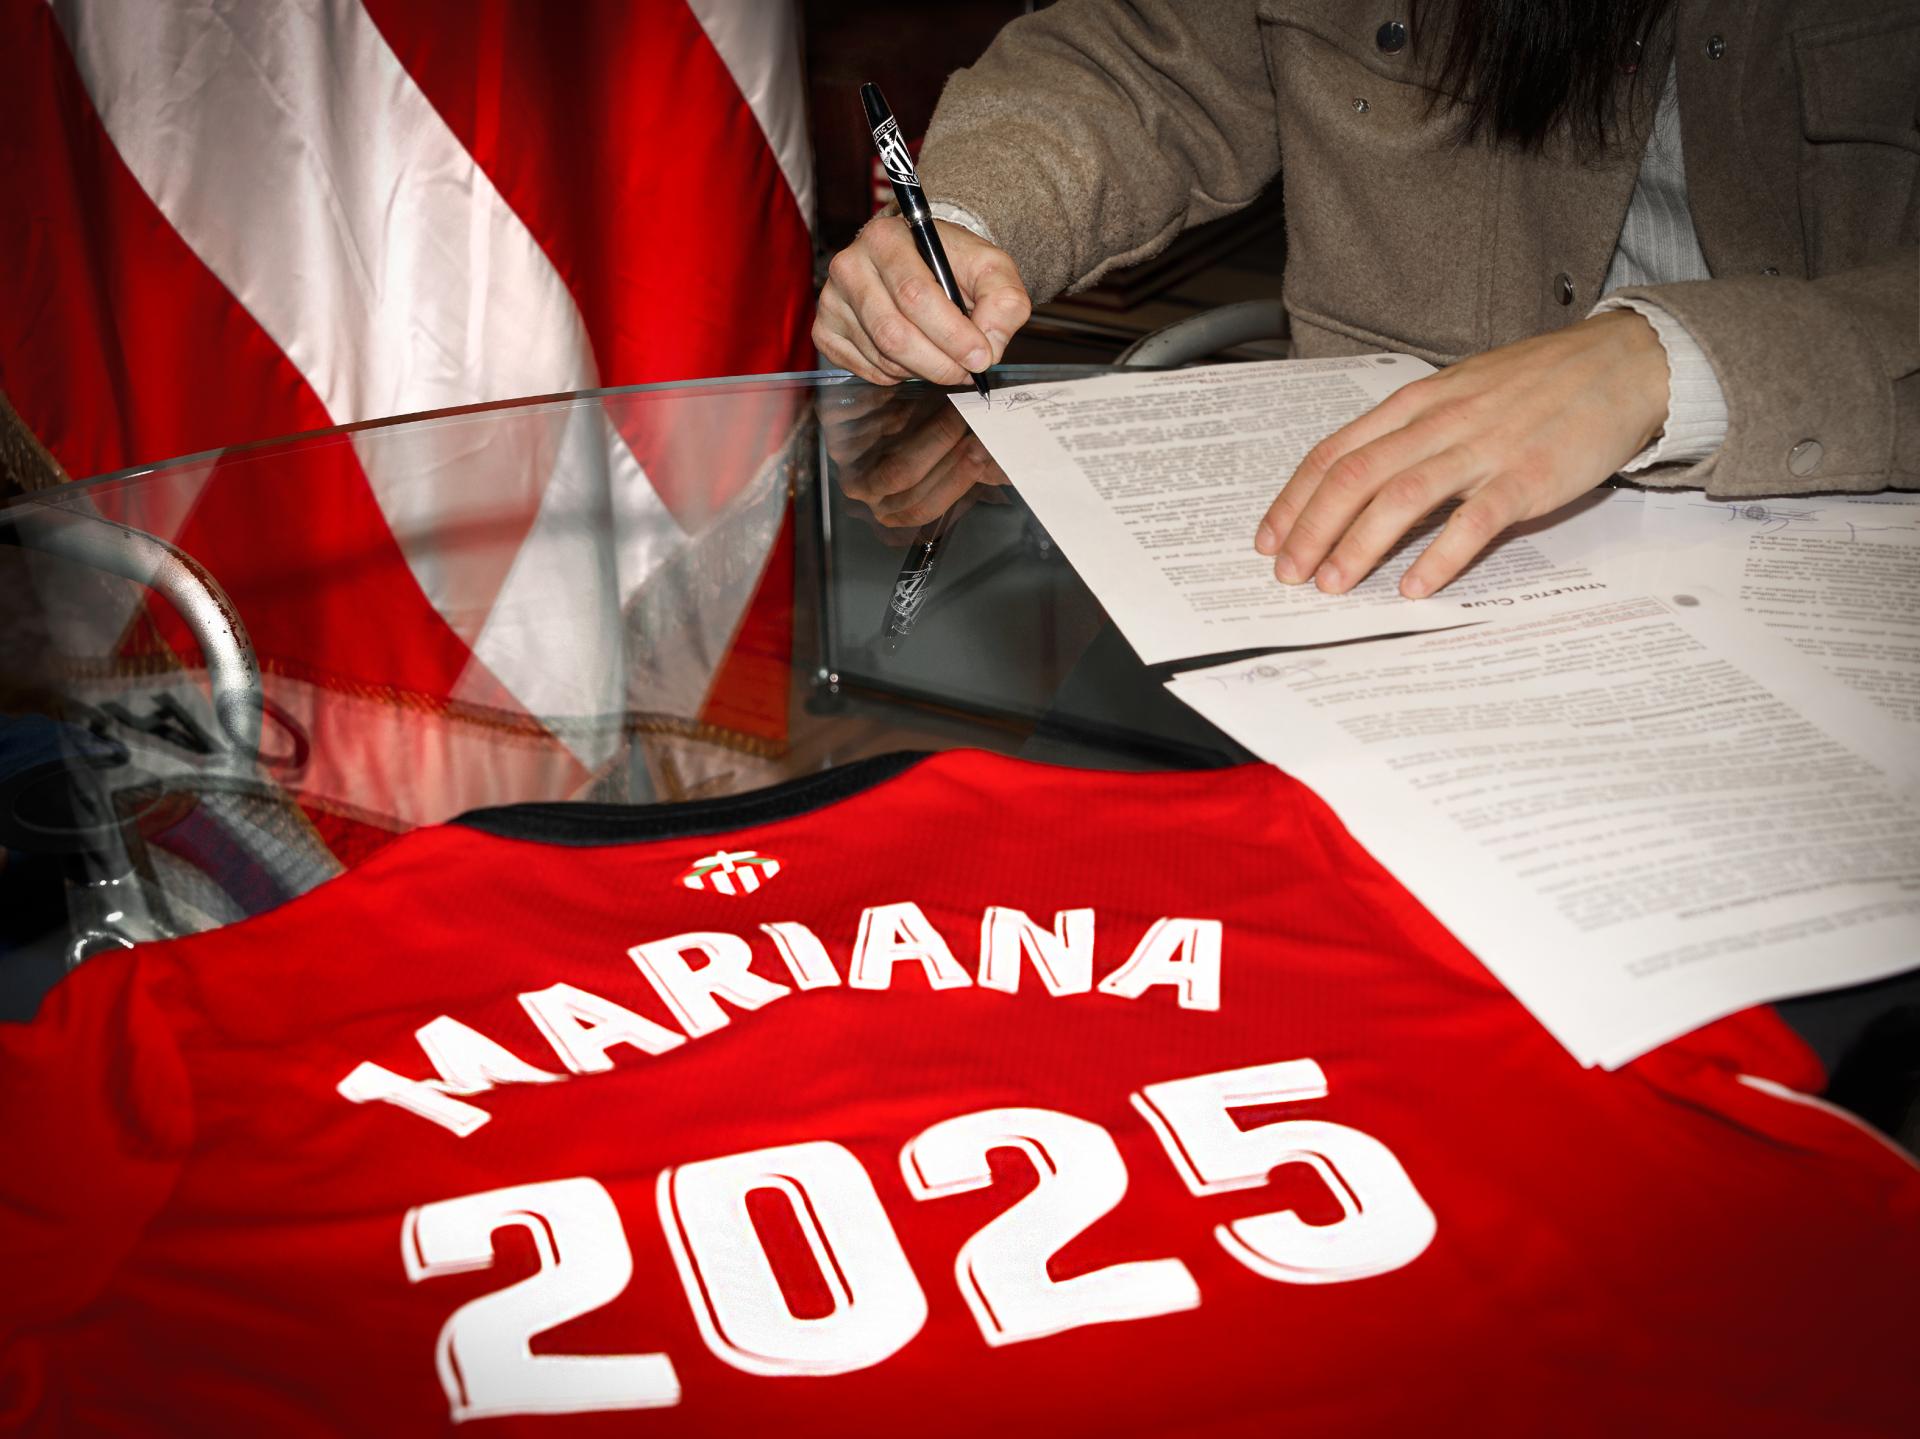 Mariana Cerro contract renewal